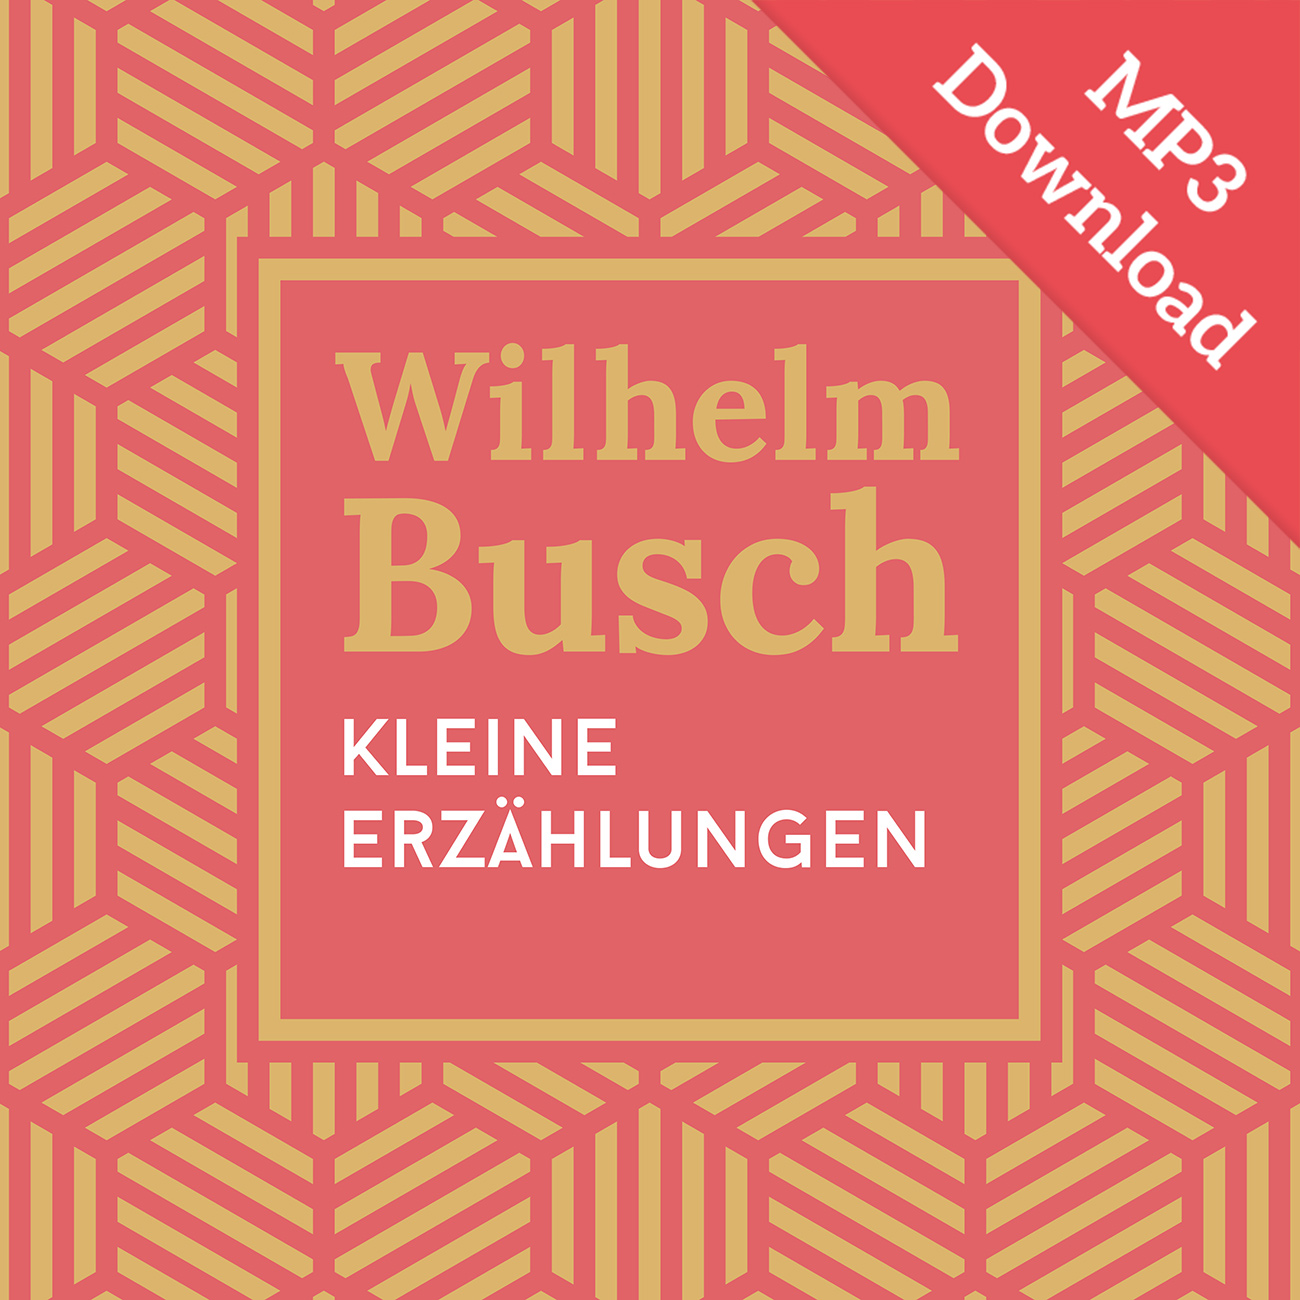 DOWNLOAD: Kleine Erzählungen (Hörbuch [MP3])